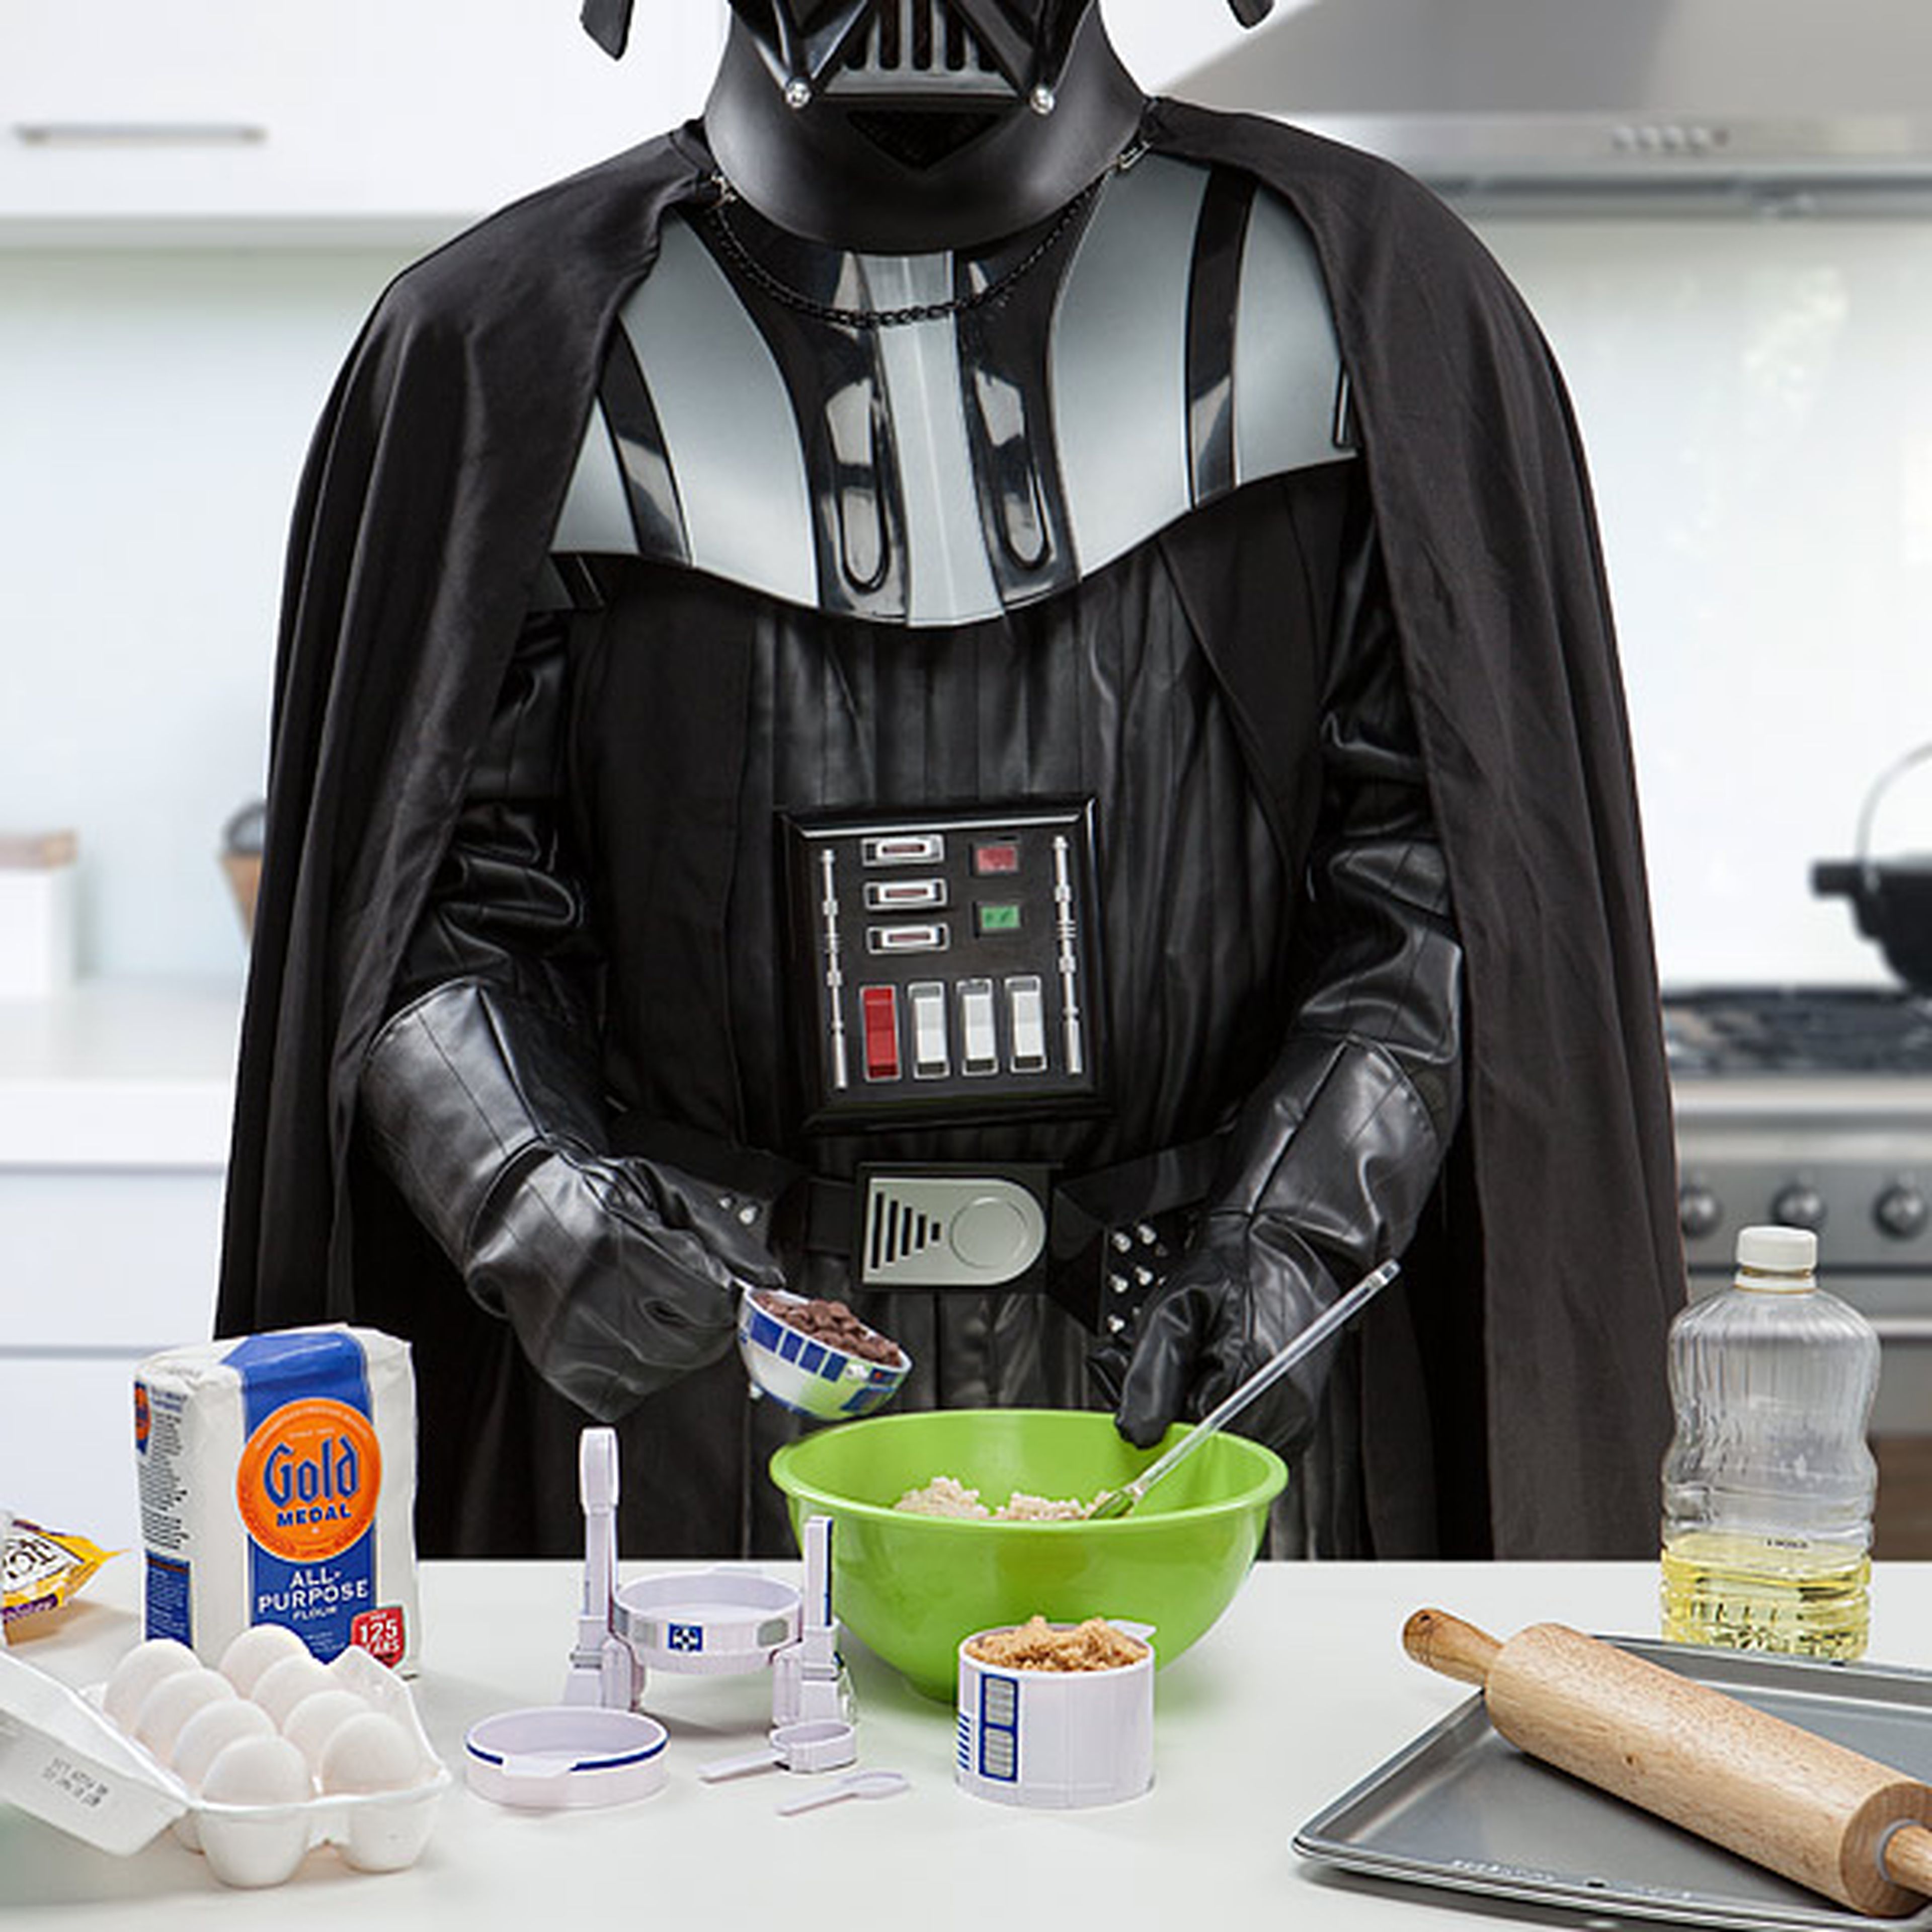 La tostadora de Darth Vader que convertirá tu pan al lado oscuro